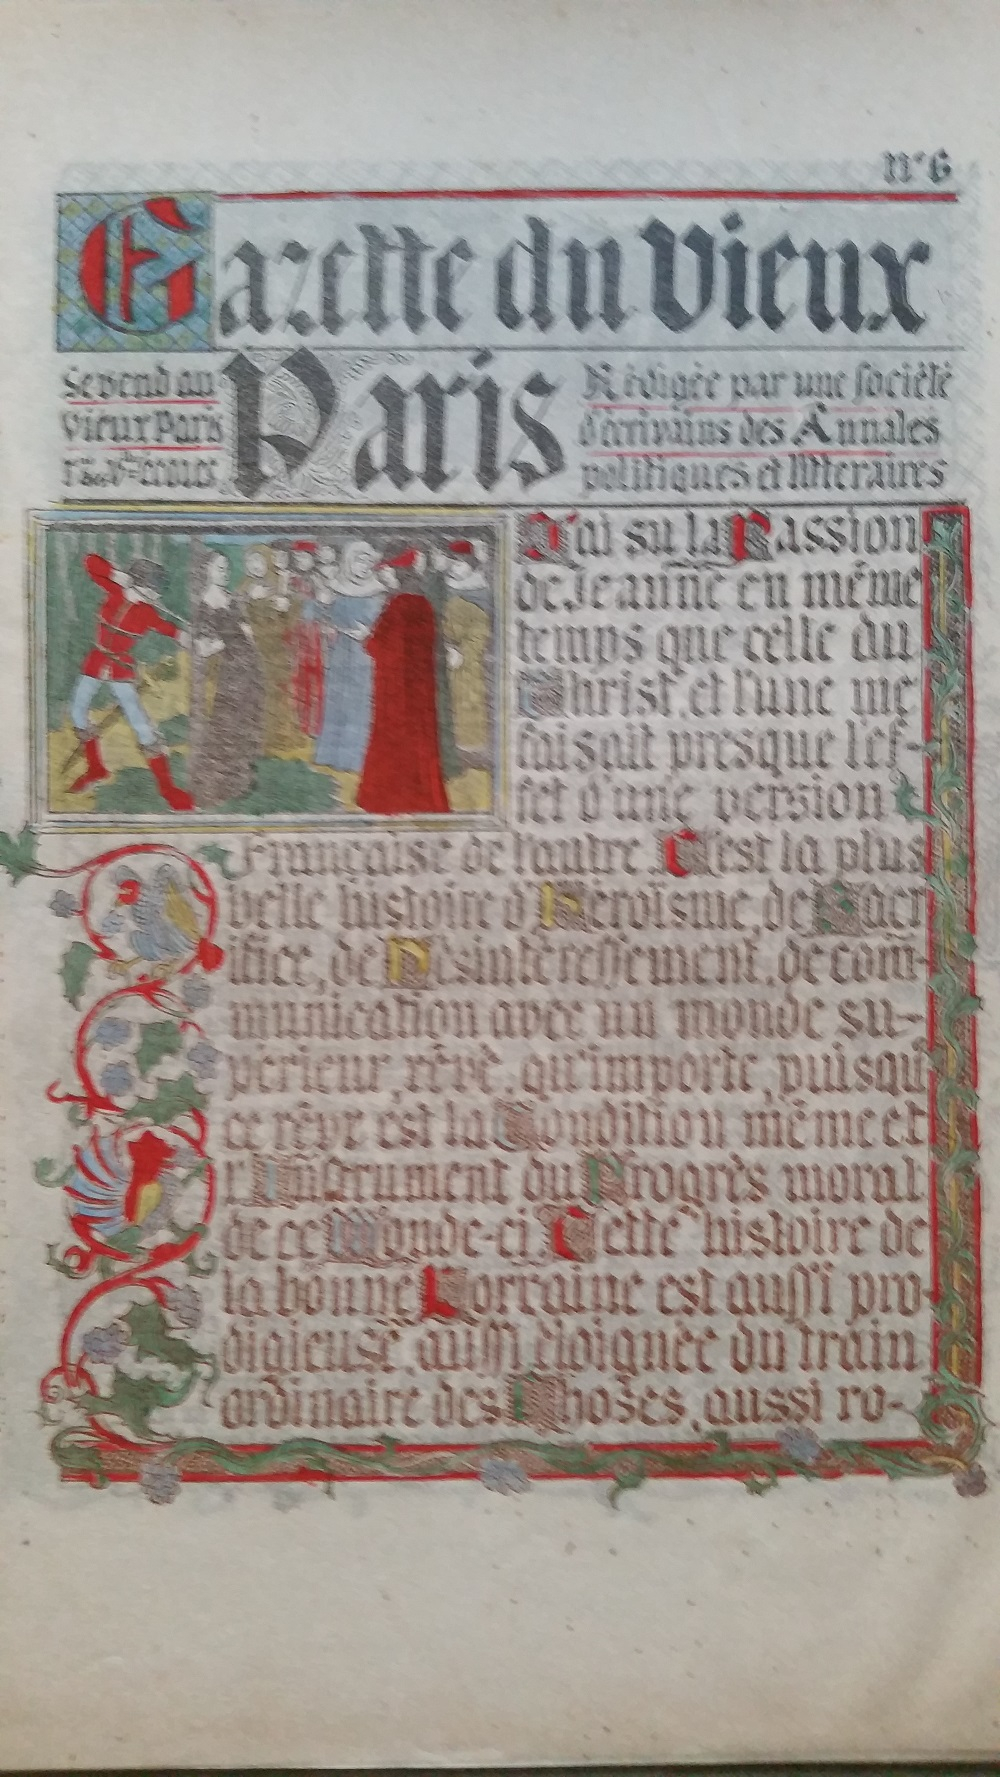 La Gazette du Vieux Paris Portefeuille toilé illustré